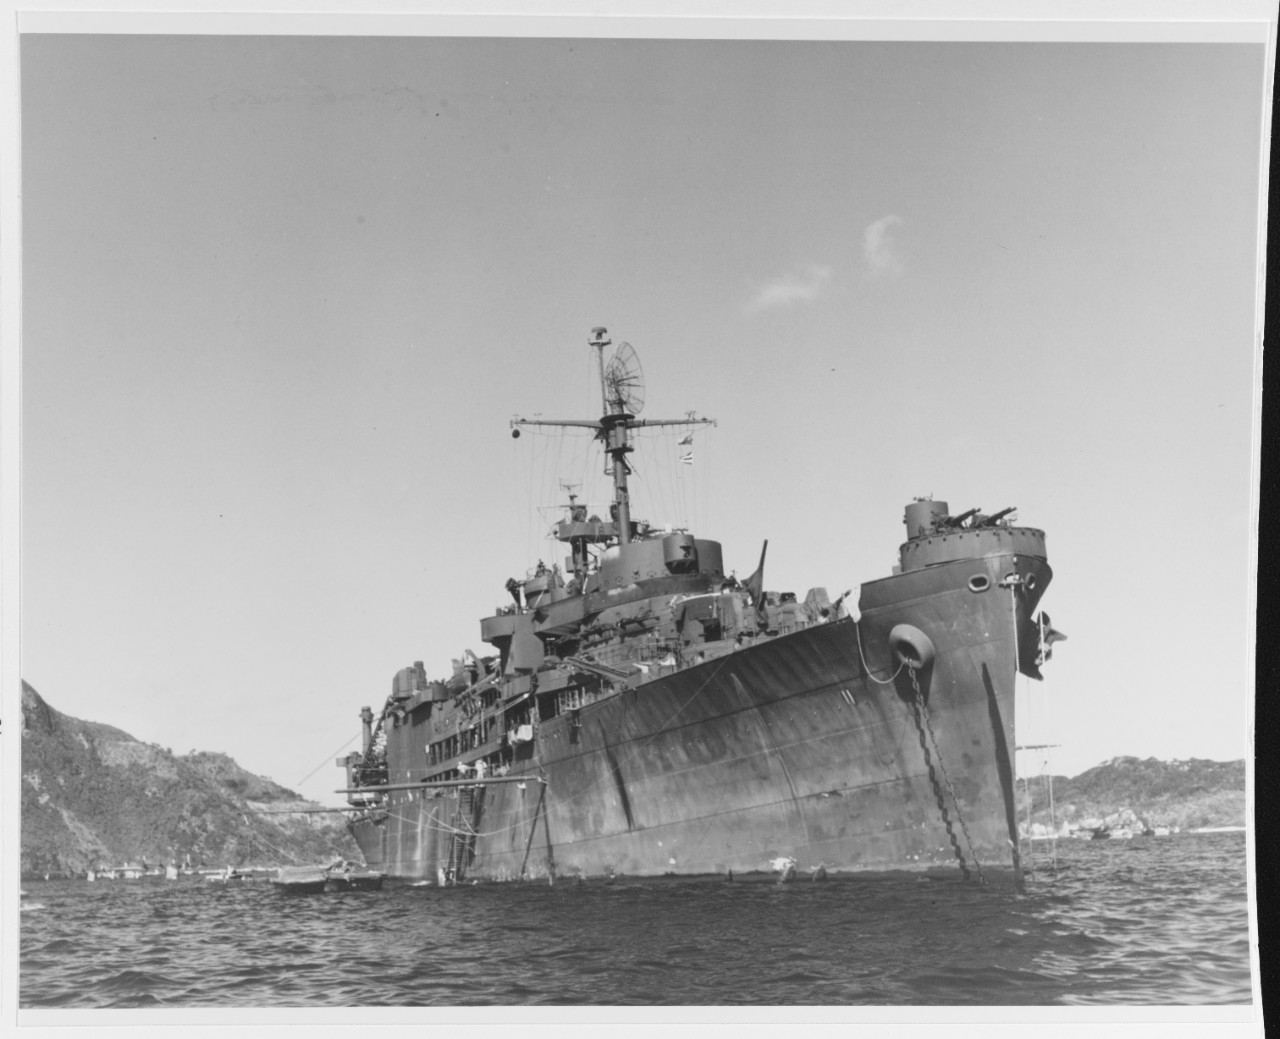 USS NORTON SOUND (AV-11)